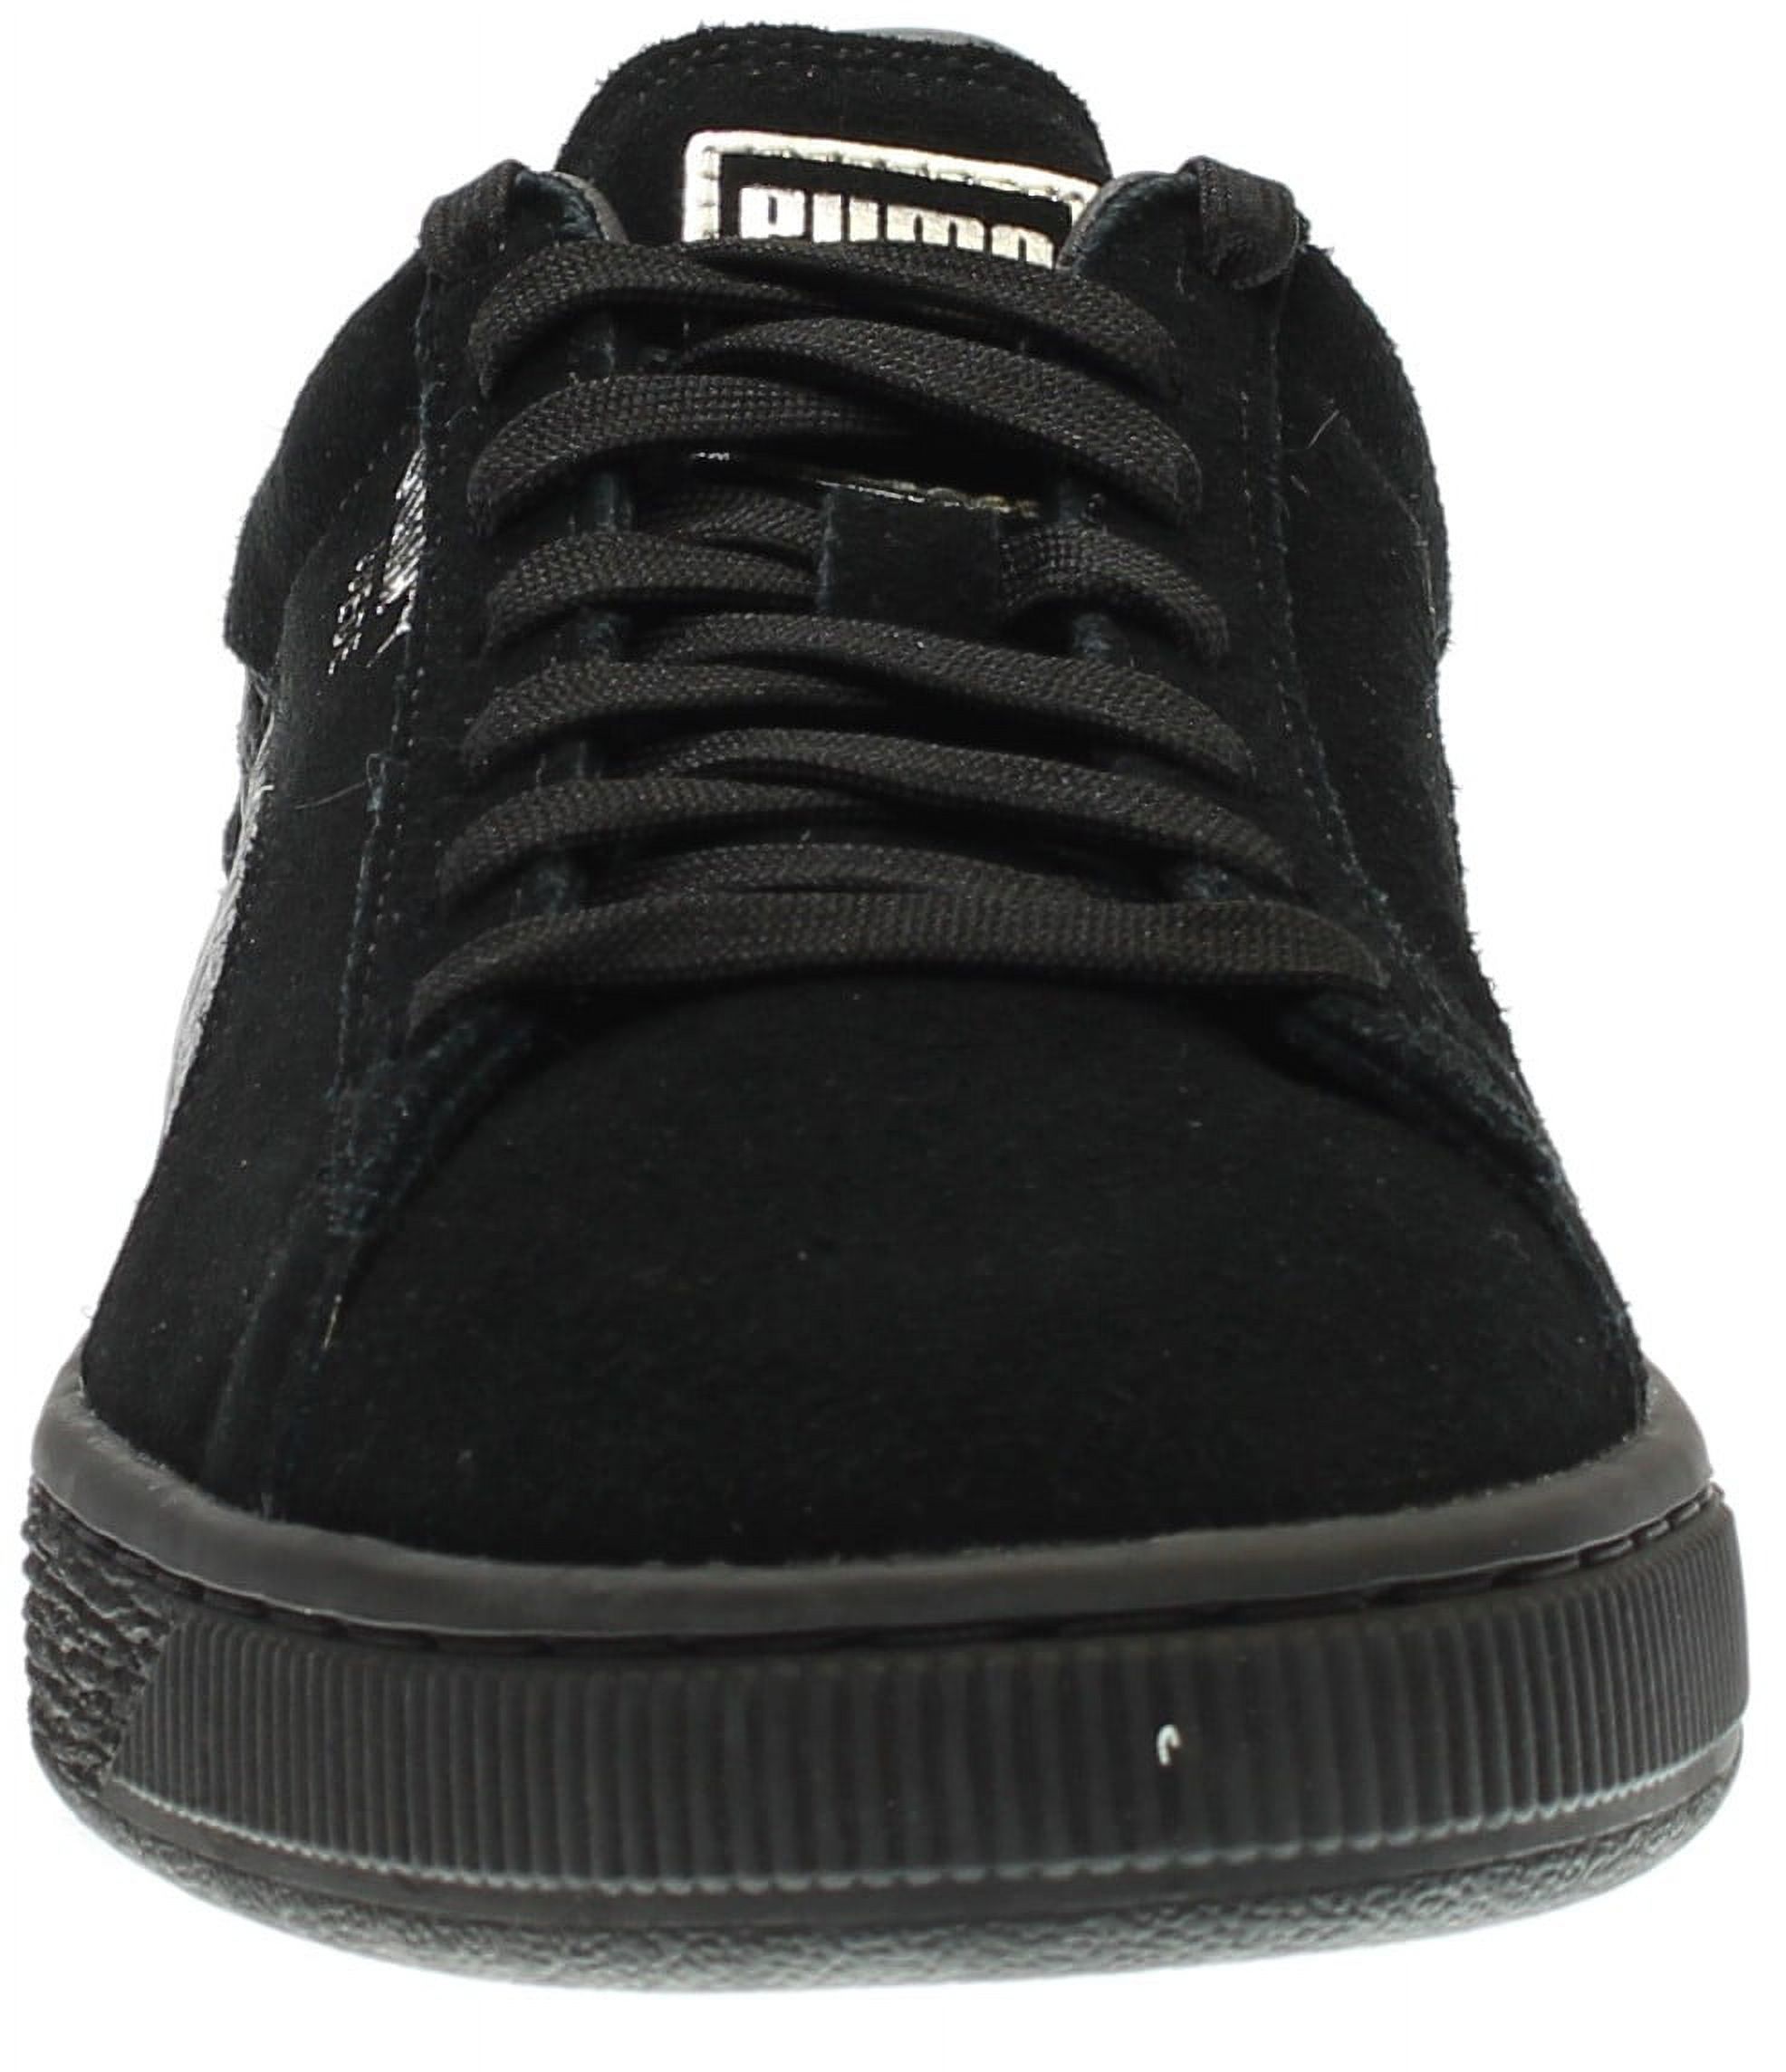 PUMA 363164-06 : Men's Suede Classic Mono Reptile Fashion Sneaker, Black (Puma Black-puma Silv, 10.5 D(M) US) - image 5 of 7